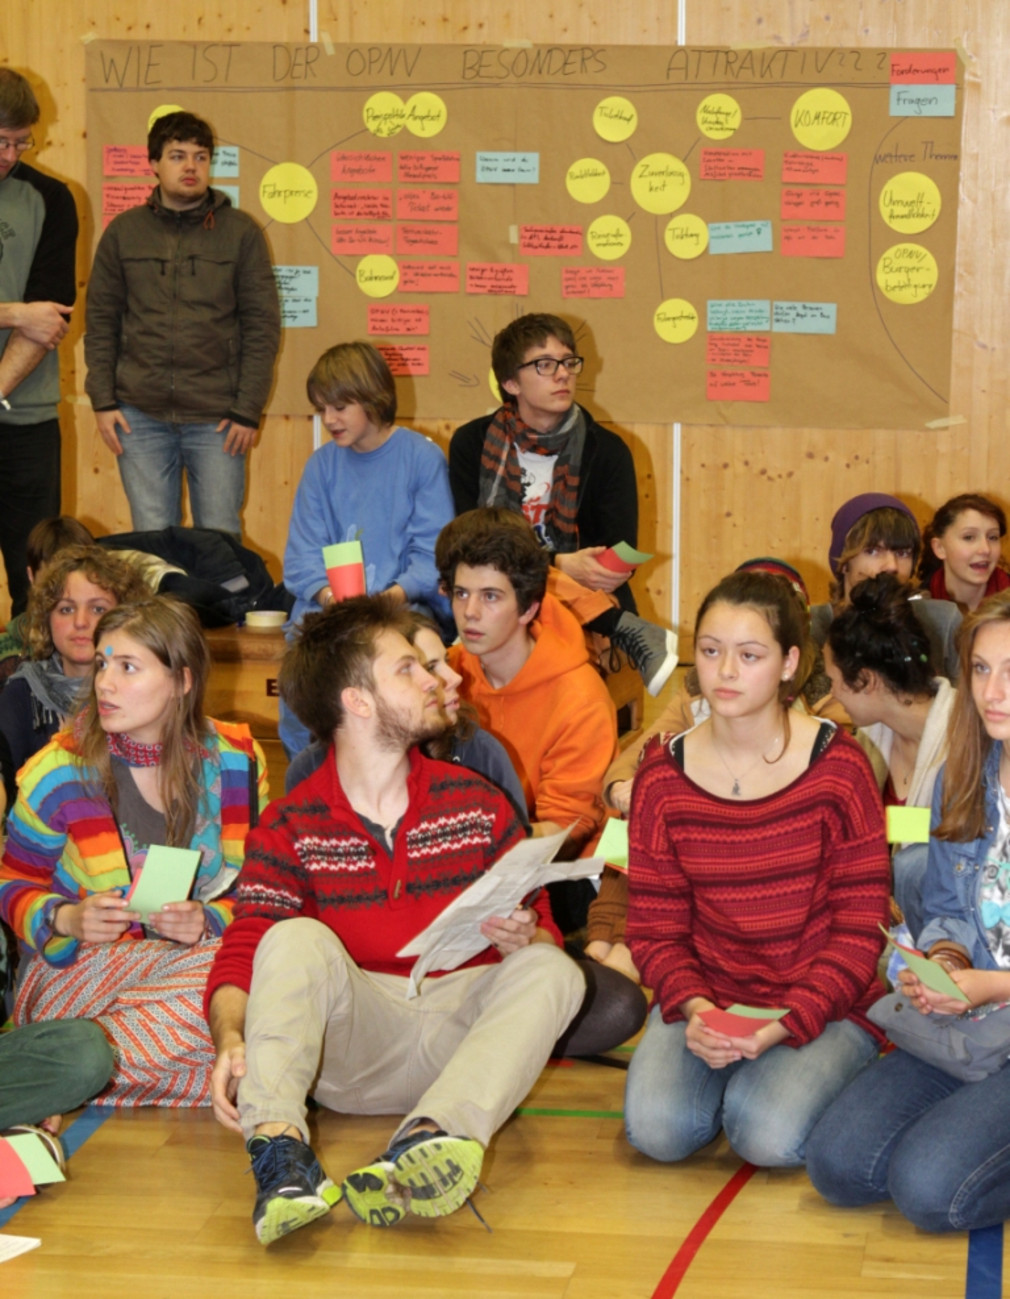 Verkehrspolitik im Dialog mit Jugendlichen am 30. Oktober 2013 in Tübingen (Bild: Andreas Fink)